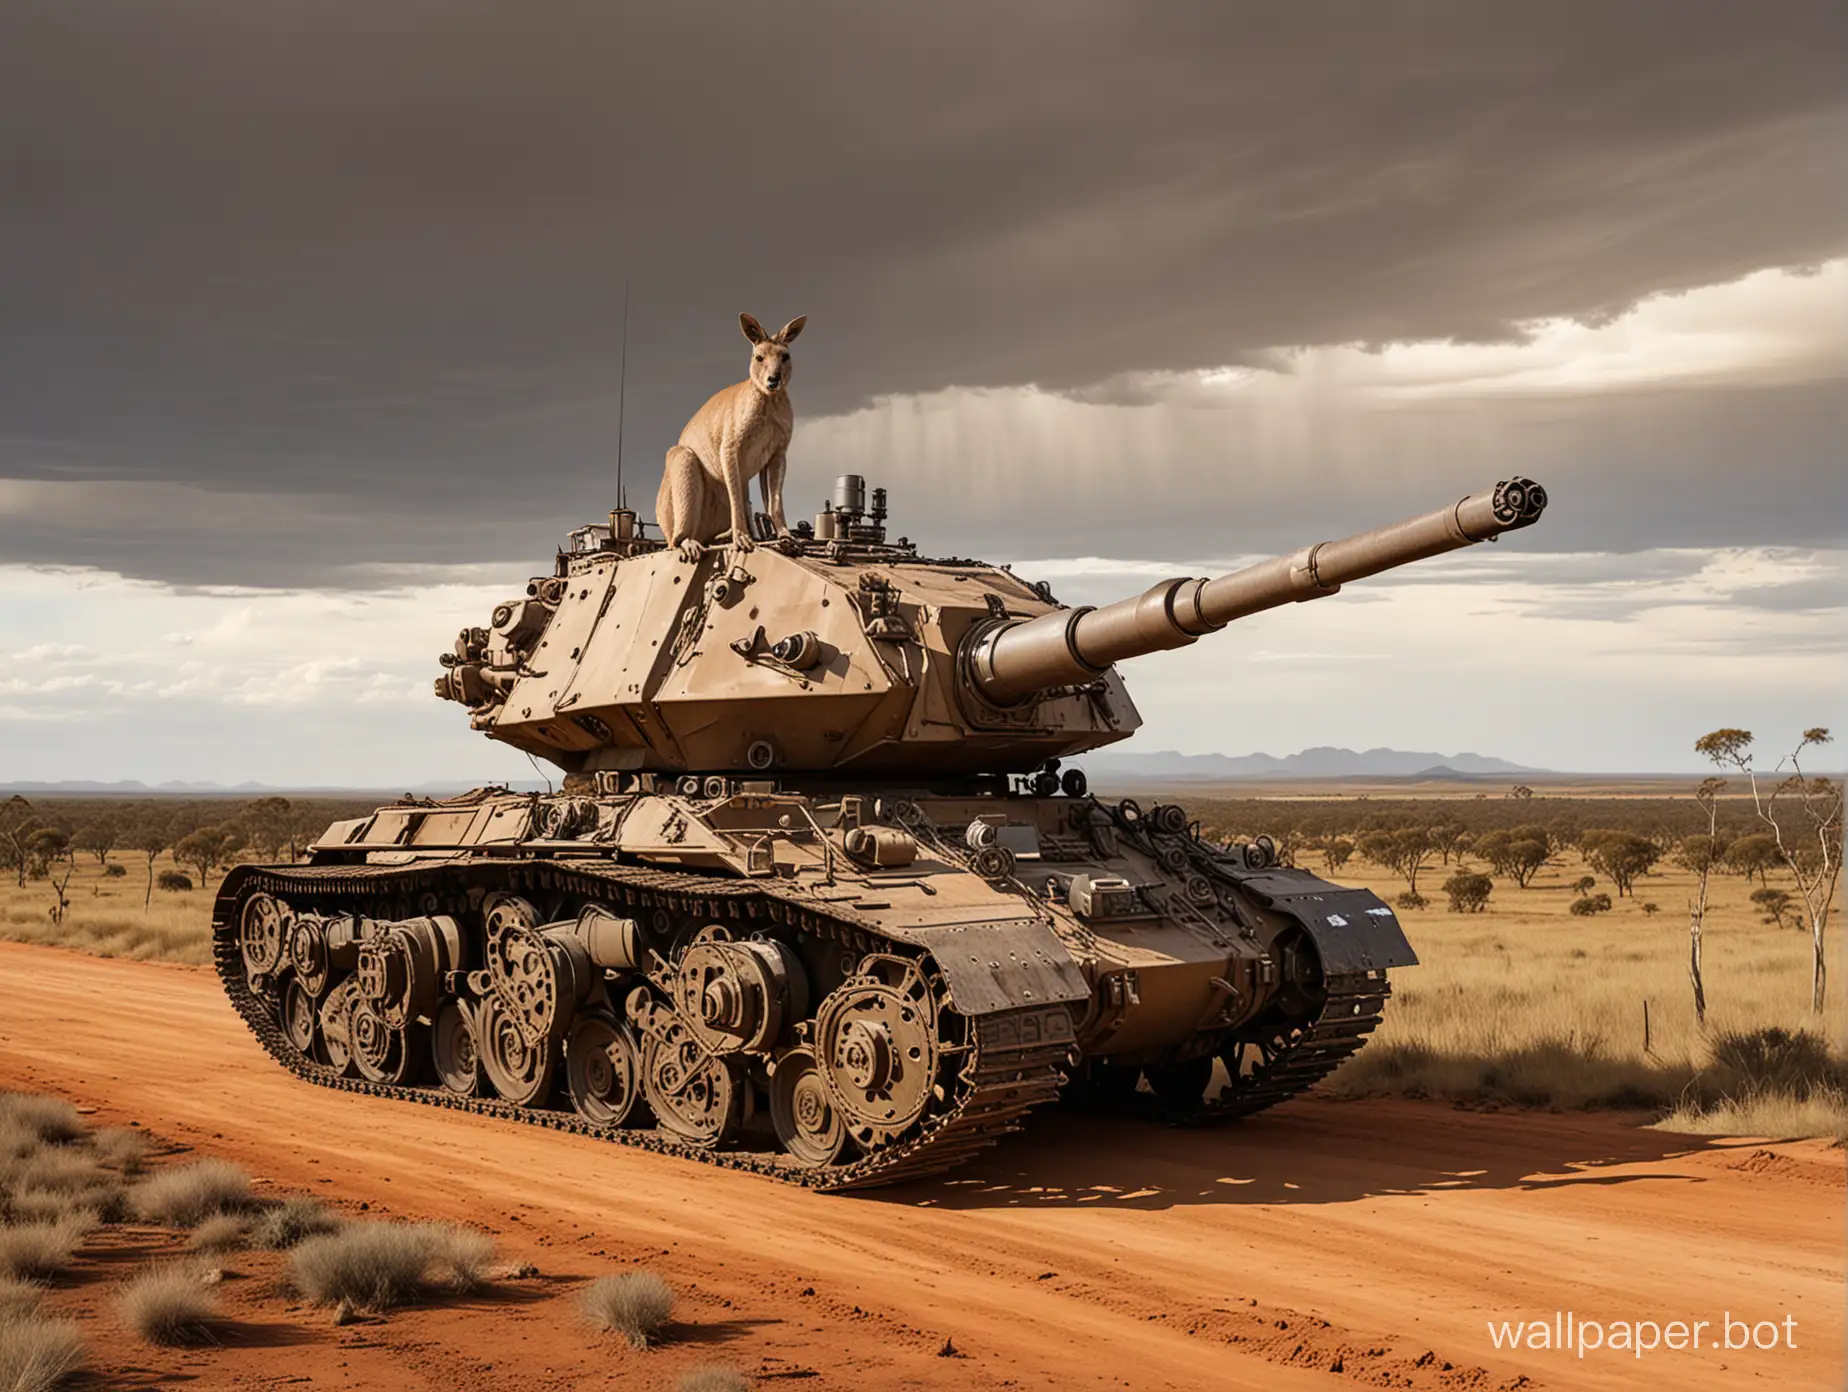 Танк-кенгуру с огромными механическими лапами и длинным хвостом на фоне пейзажа Австралии